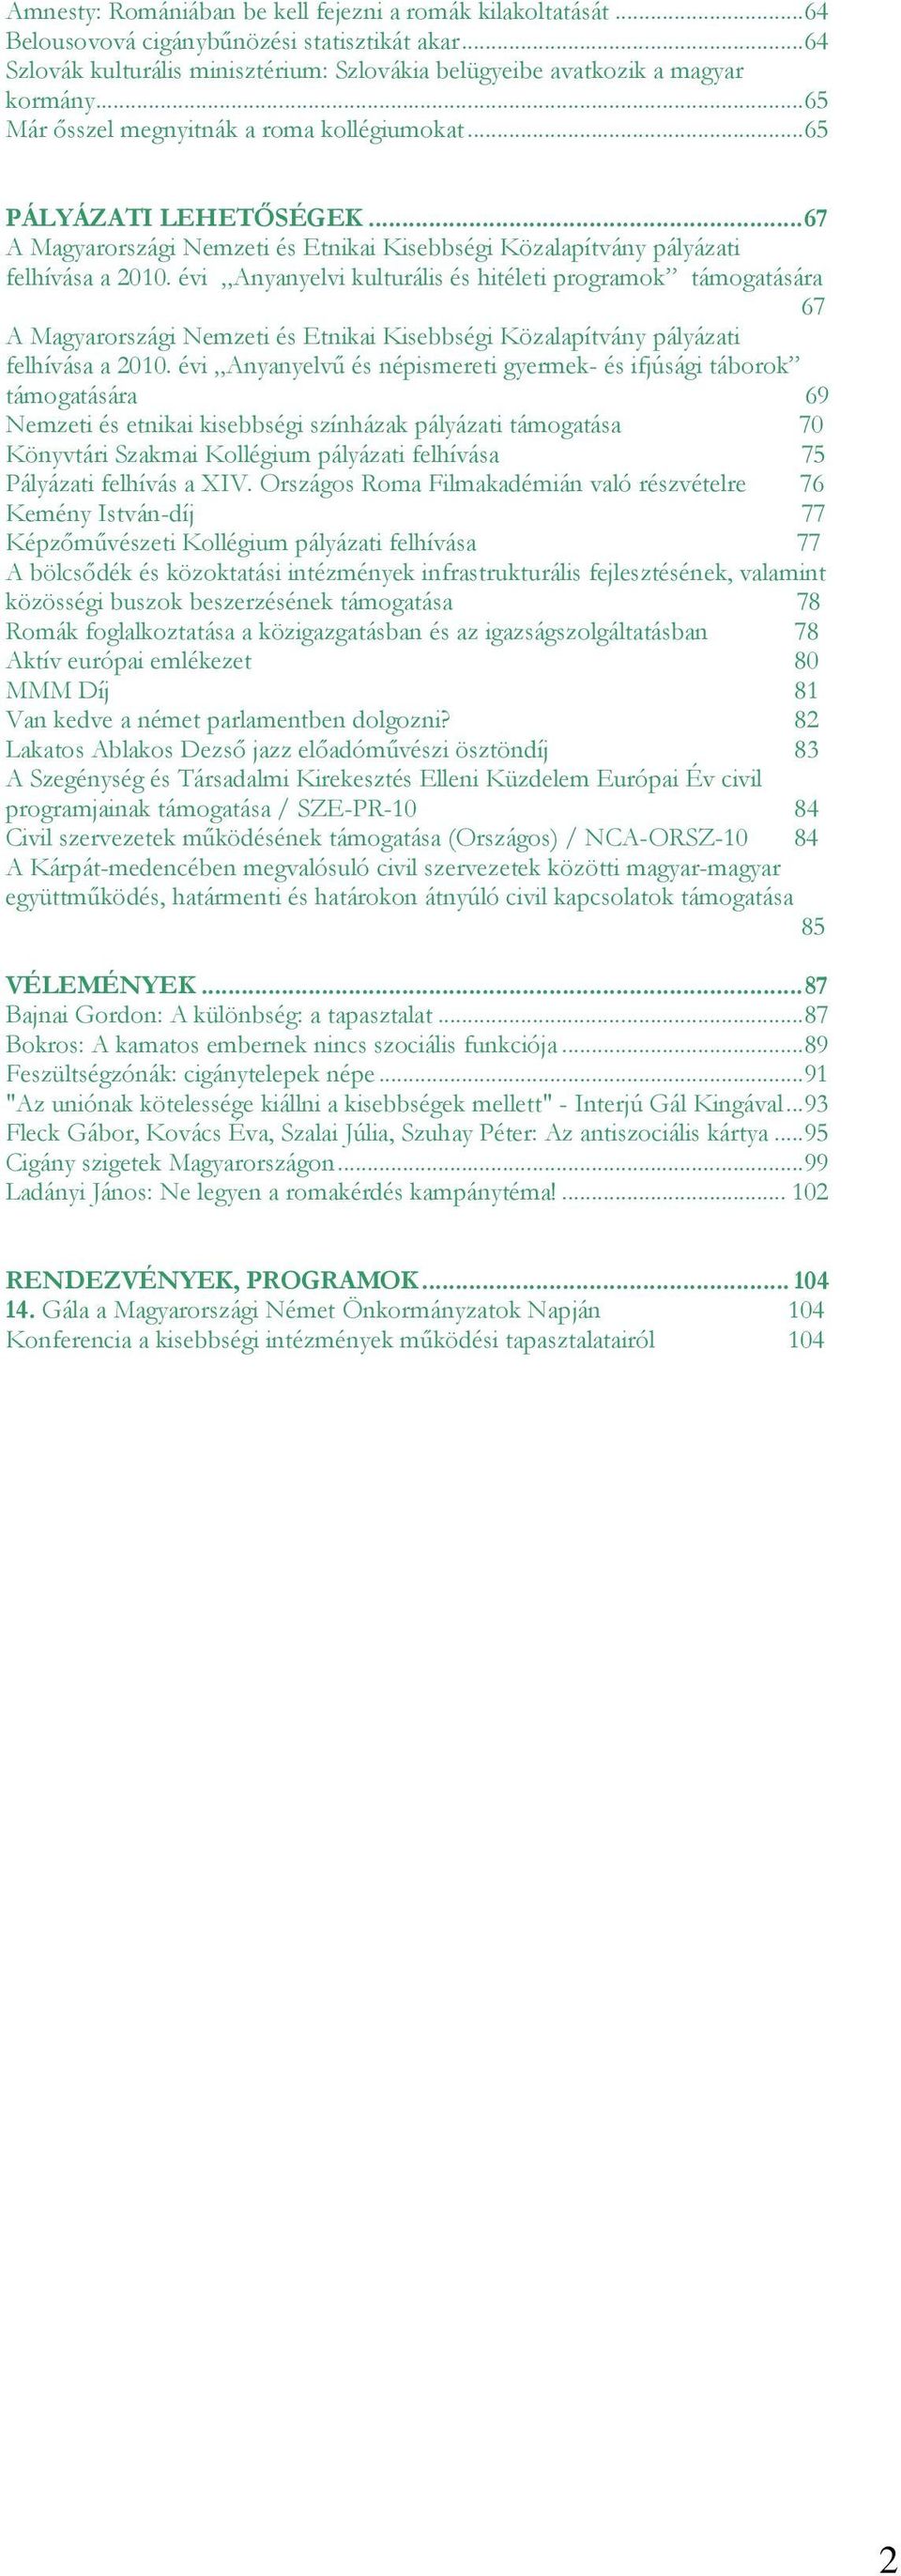 évi Anyanyelvi kulturális és hitéleti programok támogatására 67 A Magyarországi Nemzeti és Etnikai Kisebbségi Közalapítvány pályázati felhívása a 2010.